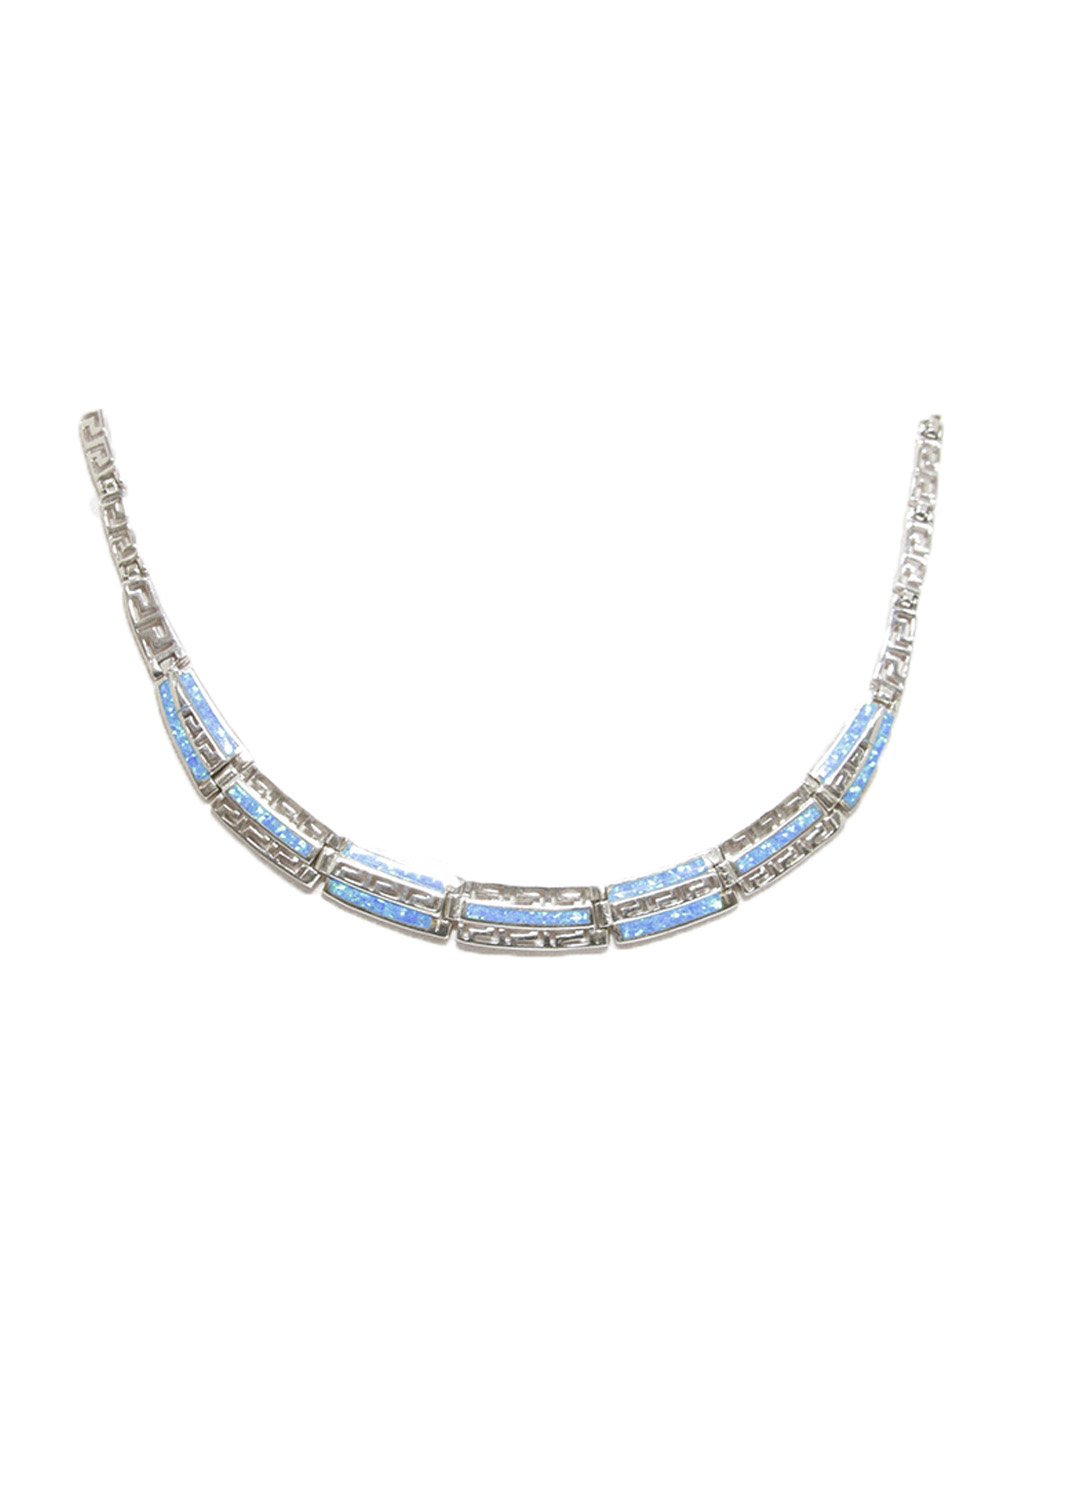 Meander - Greek key design and opal gemstones silver necklace